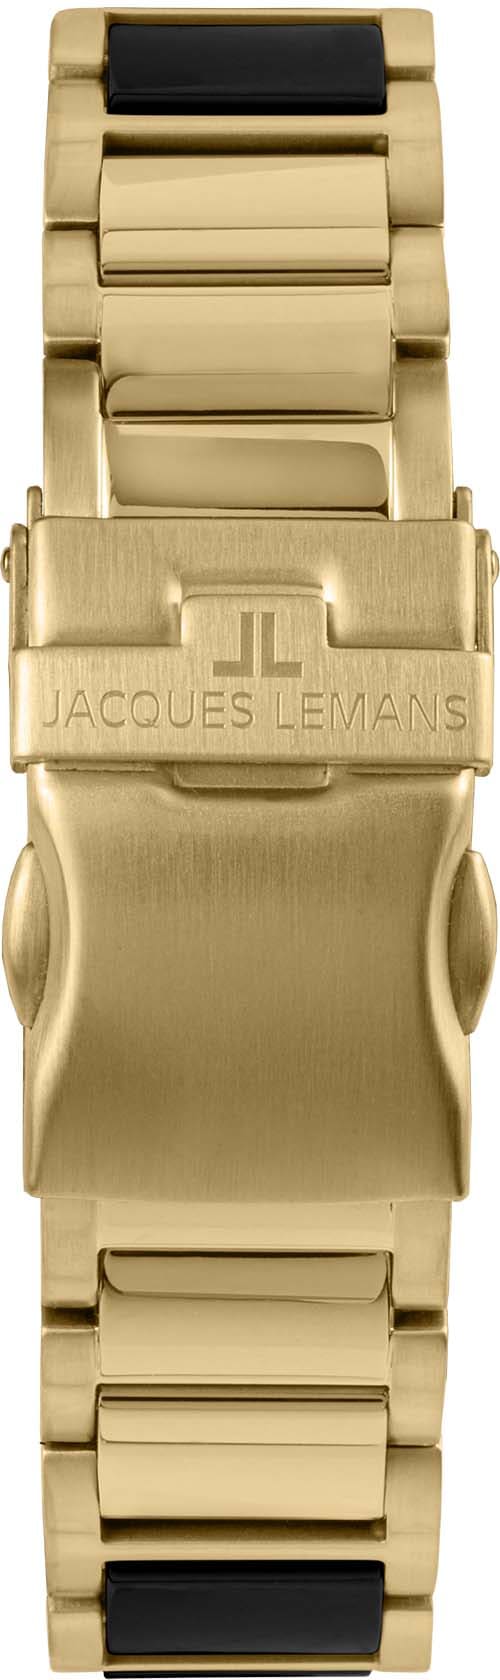 Keramikuhr Jacques bestellen 42-12G« Lemans bequem »Liverpool,